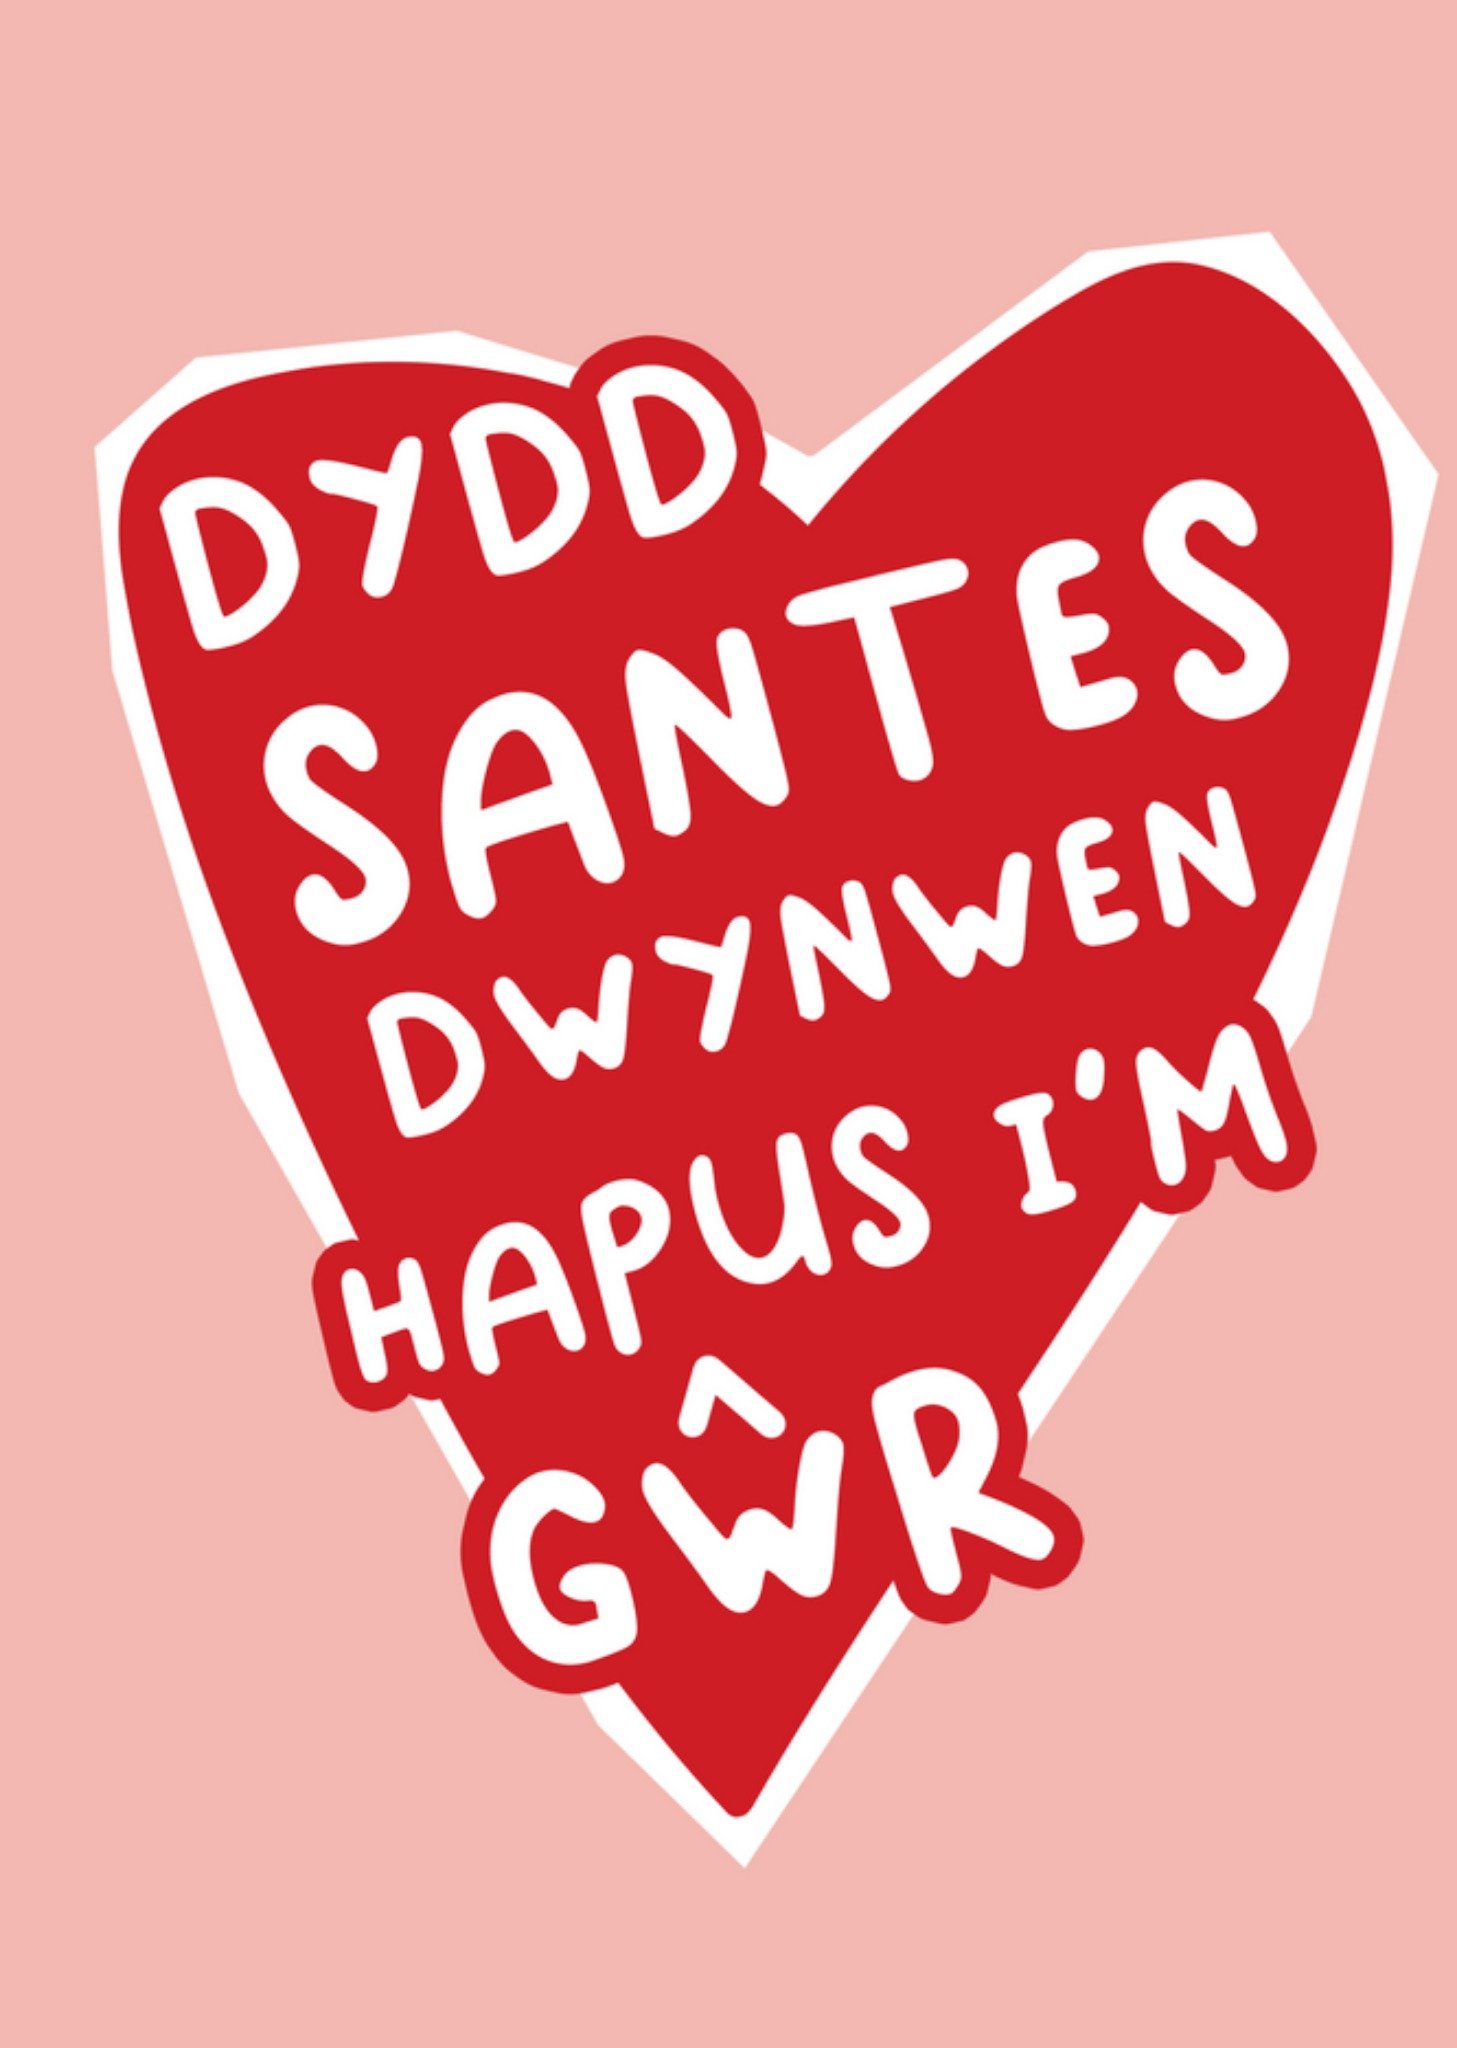 Moonpig Sweet Bold Heart Shape Text Dydd Santes Dwynwen Hapus I'm Gwr St Dwynwen'S Day Day Card Ecar